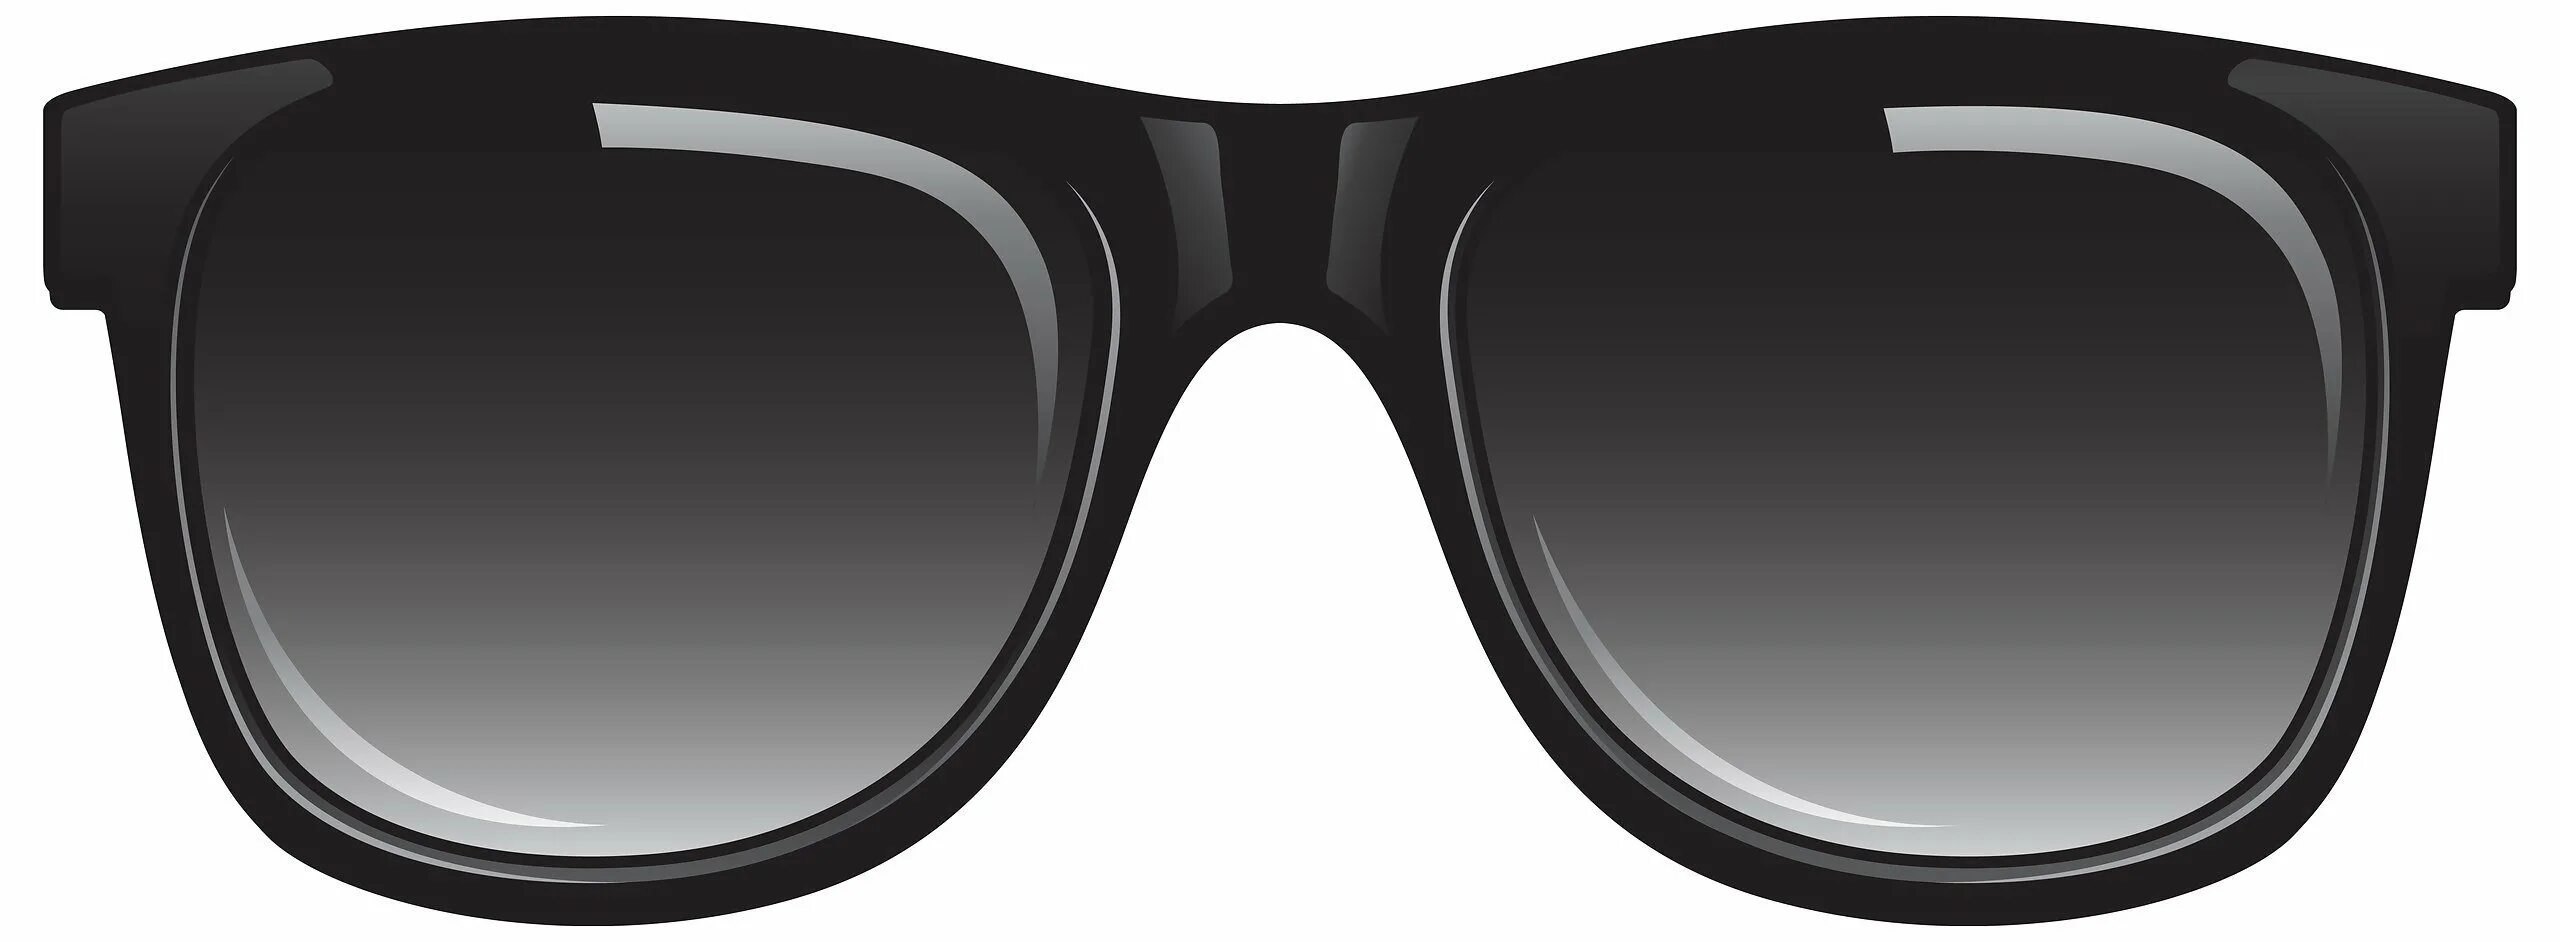 Черные очки. Солнечные очки для фотошопа. Темные очки. Чёрные очки для фотошопа.